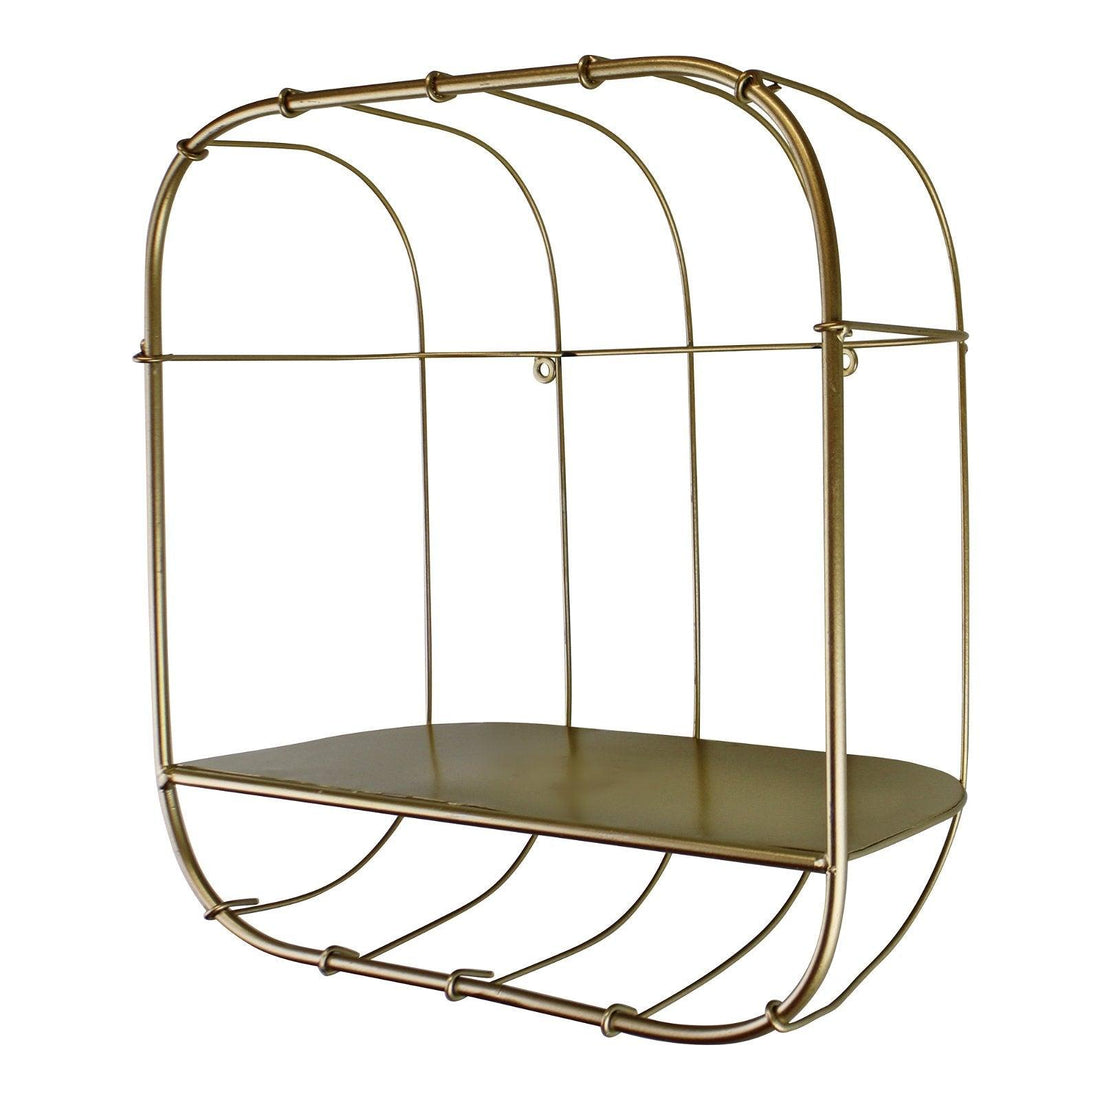 Gold Metal Wall Storage Shelf, Basket Design - £20.99 - Wall Hanging Shelving 